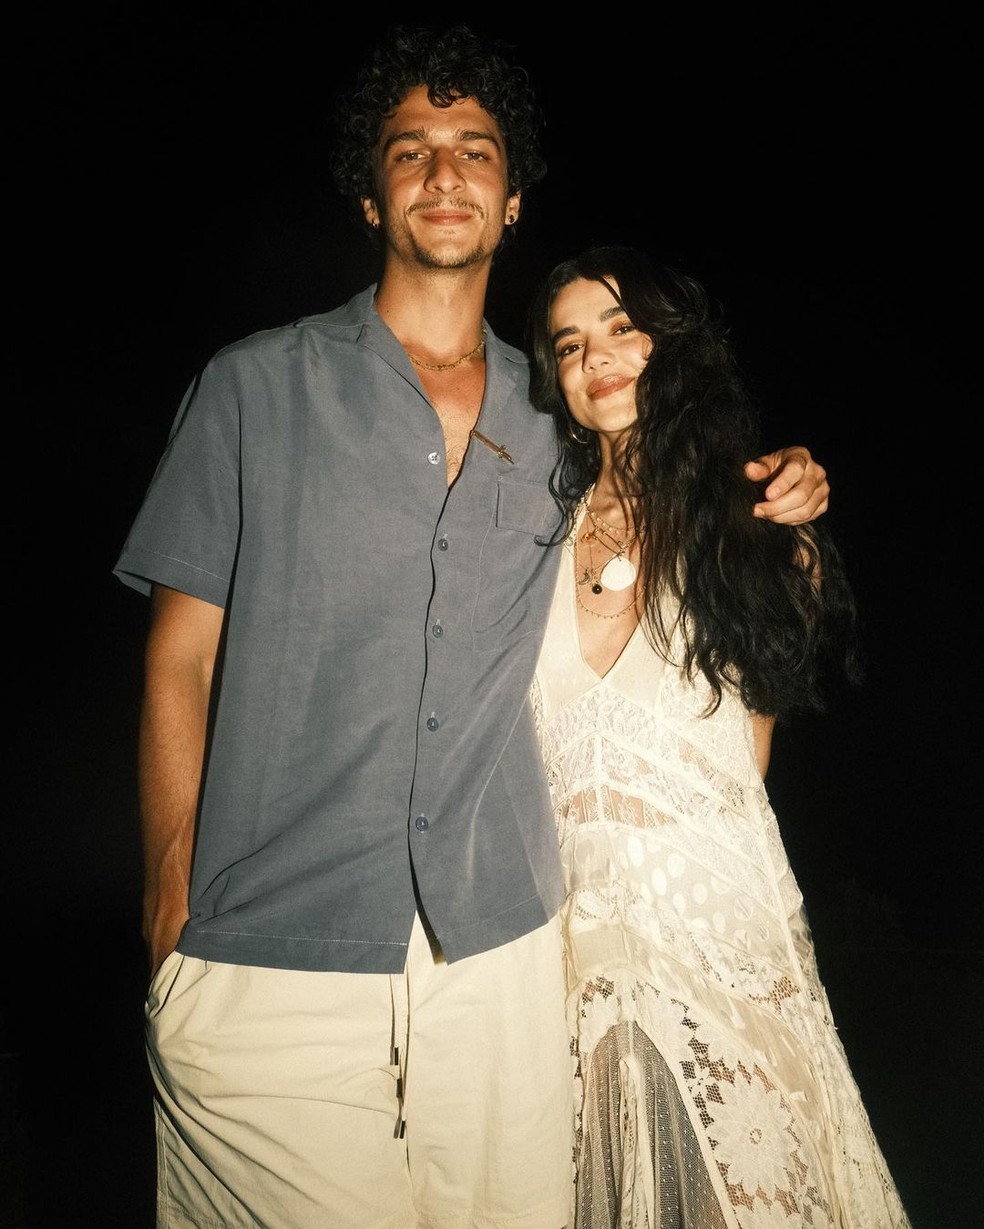 Manu Gavassi surge em foto romântica com namorado — Foto: reprodução/instagram